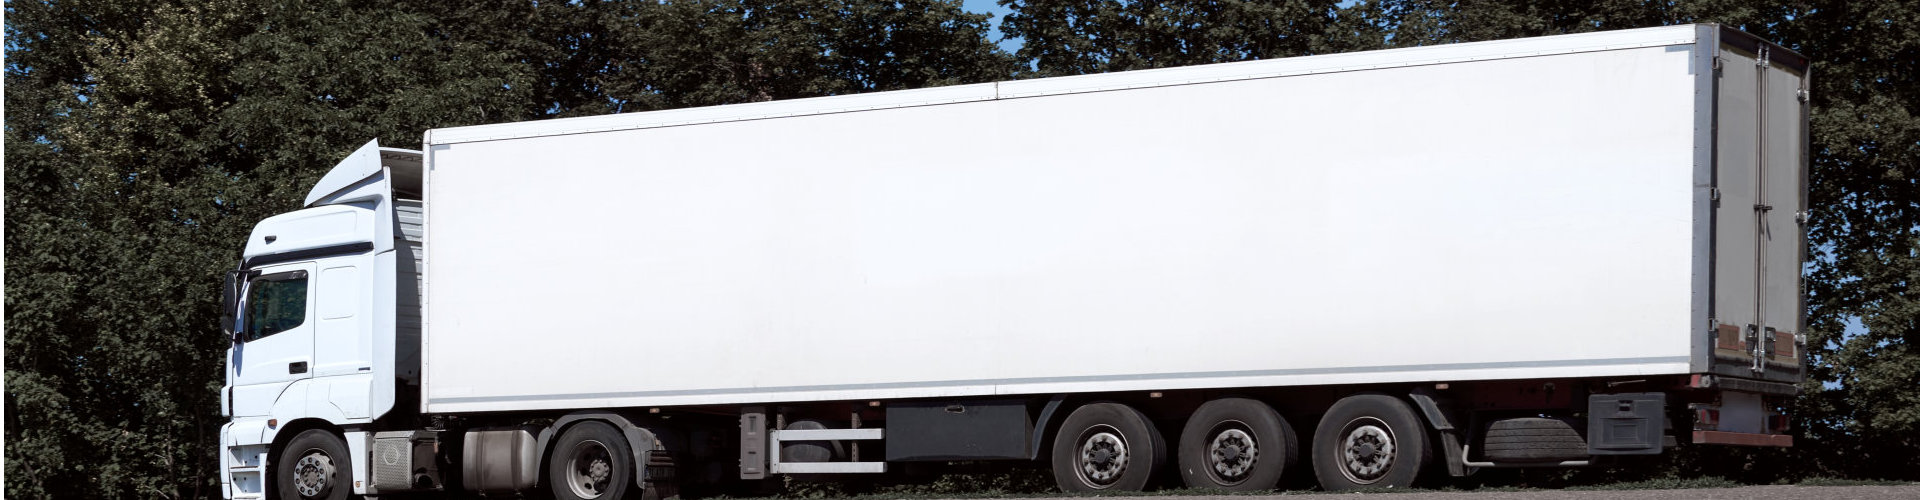 white cargo truck